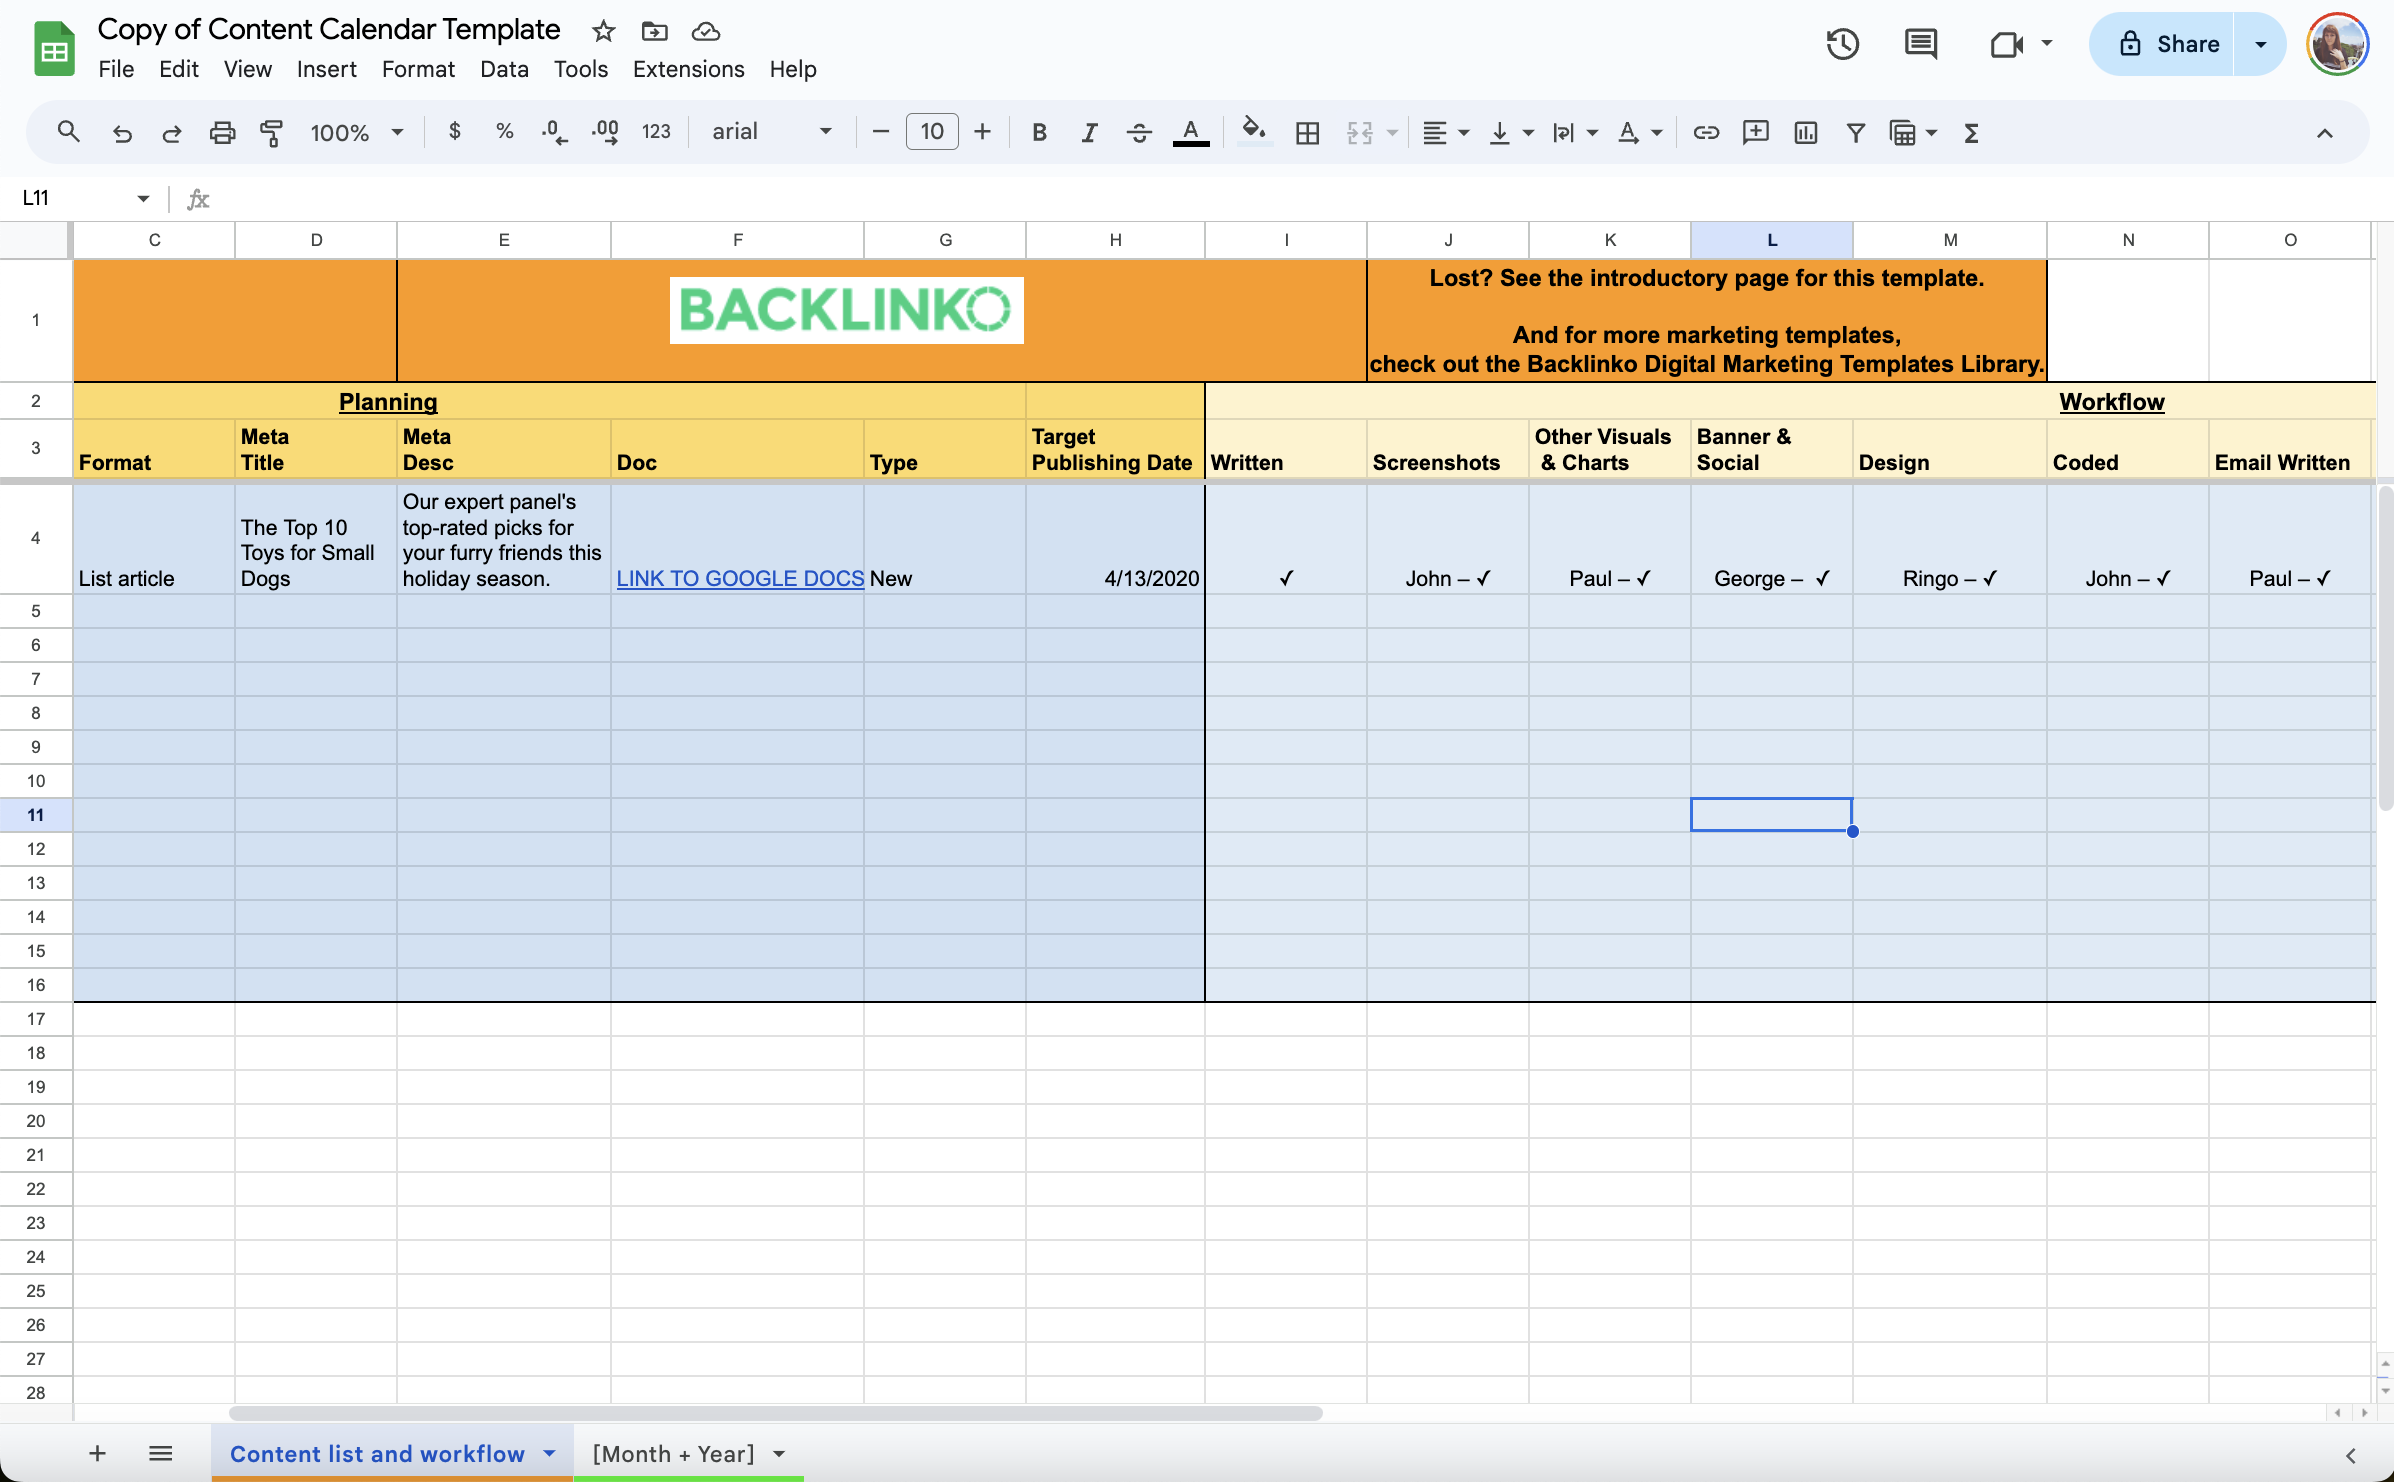 Una captura de pantalla de la plantilla de calendario de contenidos de Backlinko con columnas para la fecha, el formato, el título, el mensaje principal, las tareas, el propietario, el banner y el diseño. 